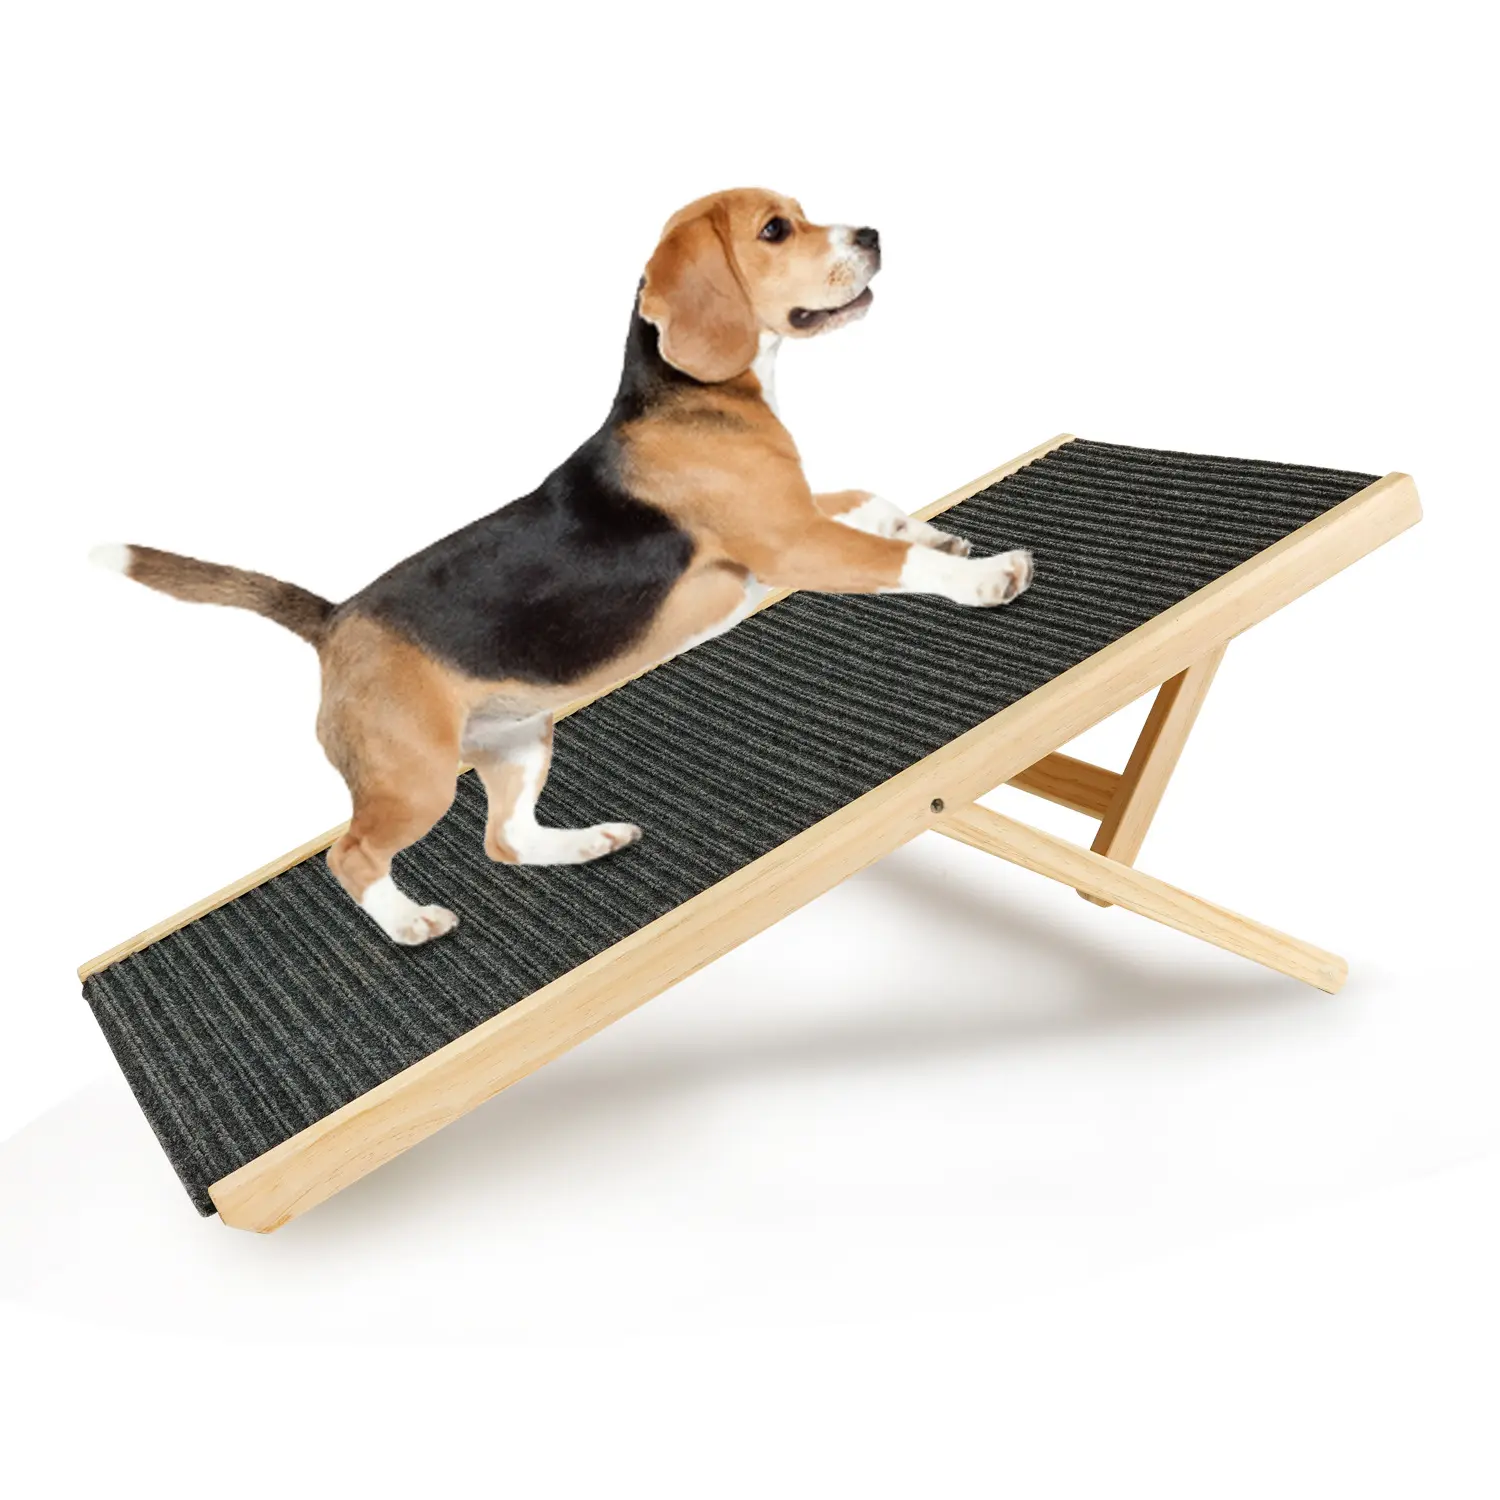 Escalera de madera para mascotas, rampa deslizante para perros, plegable y portátil